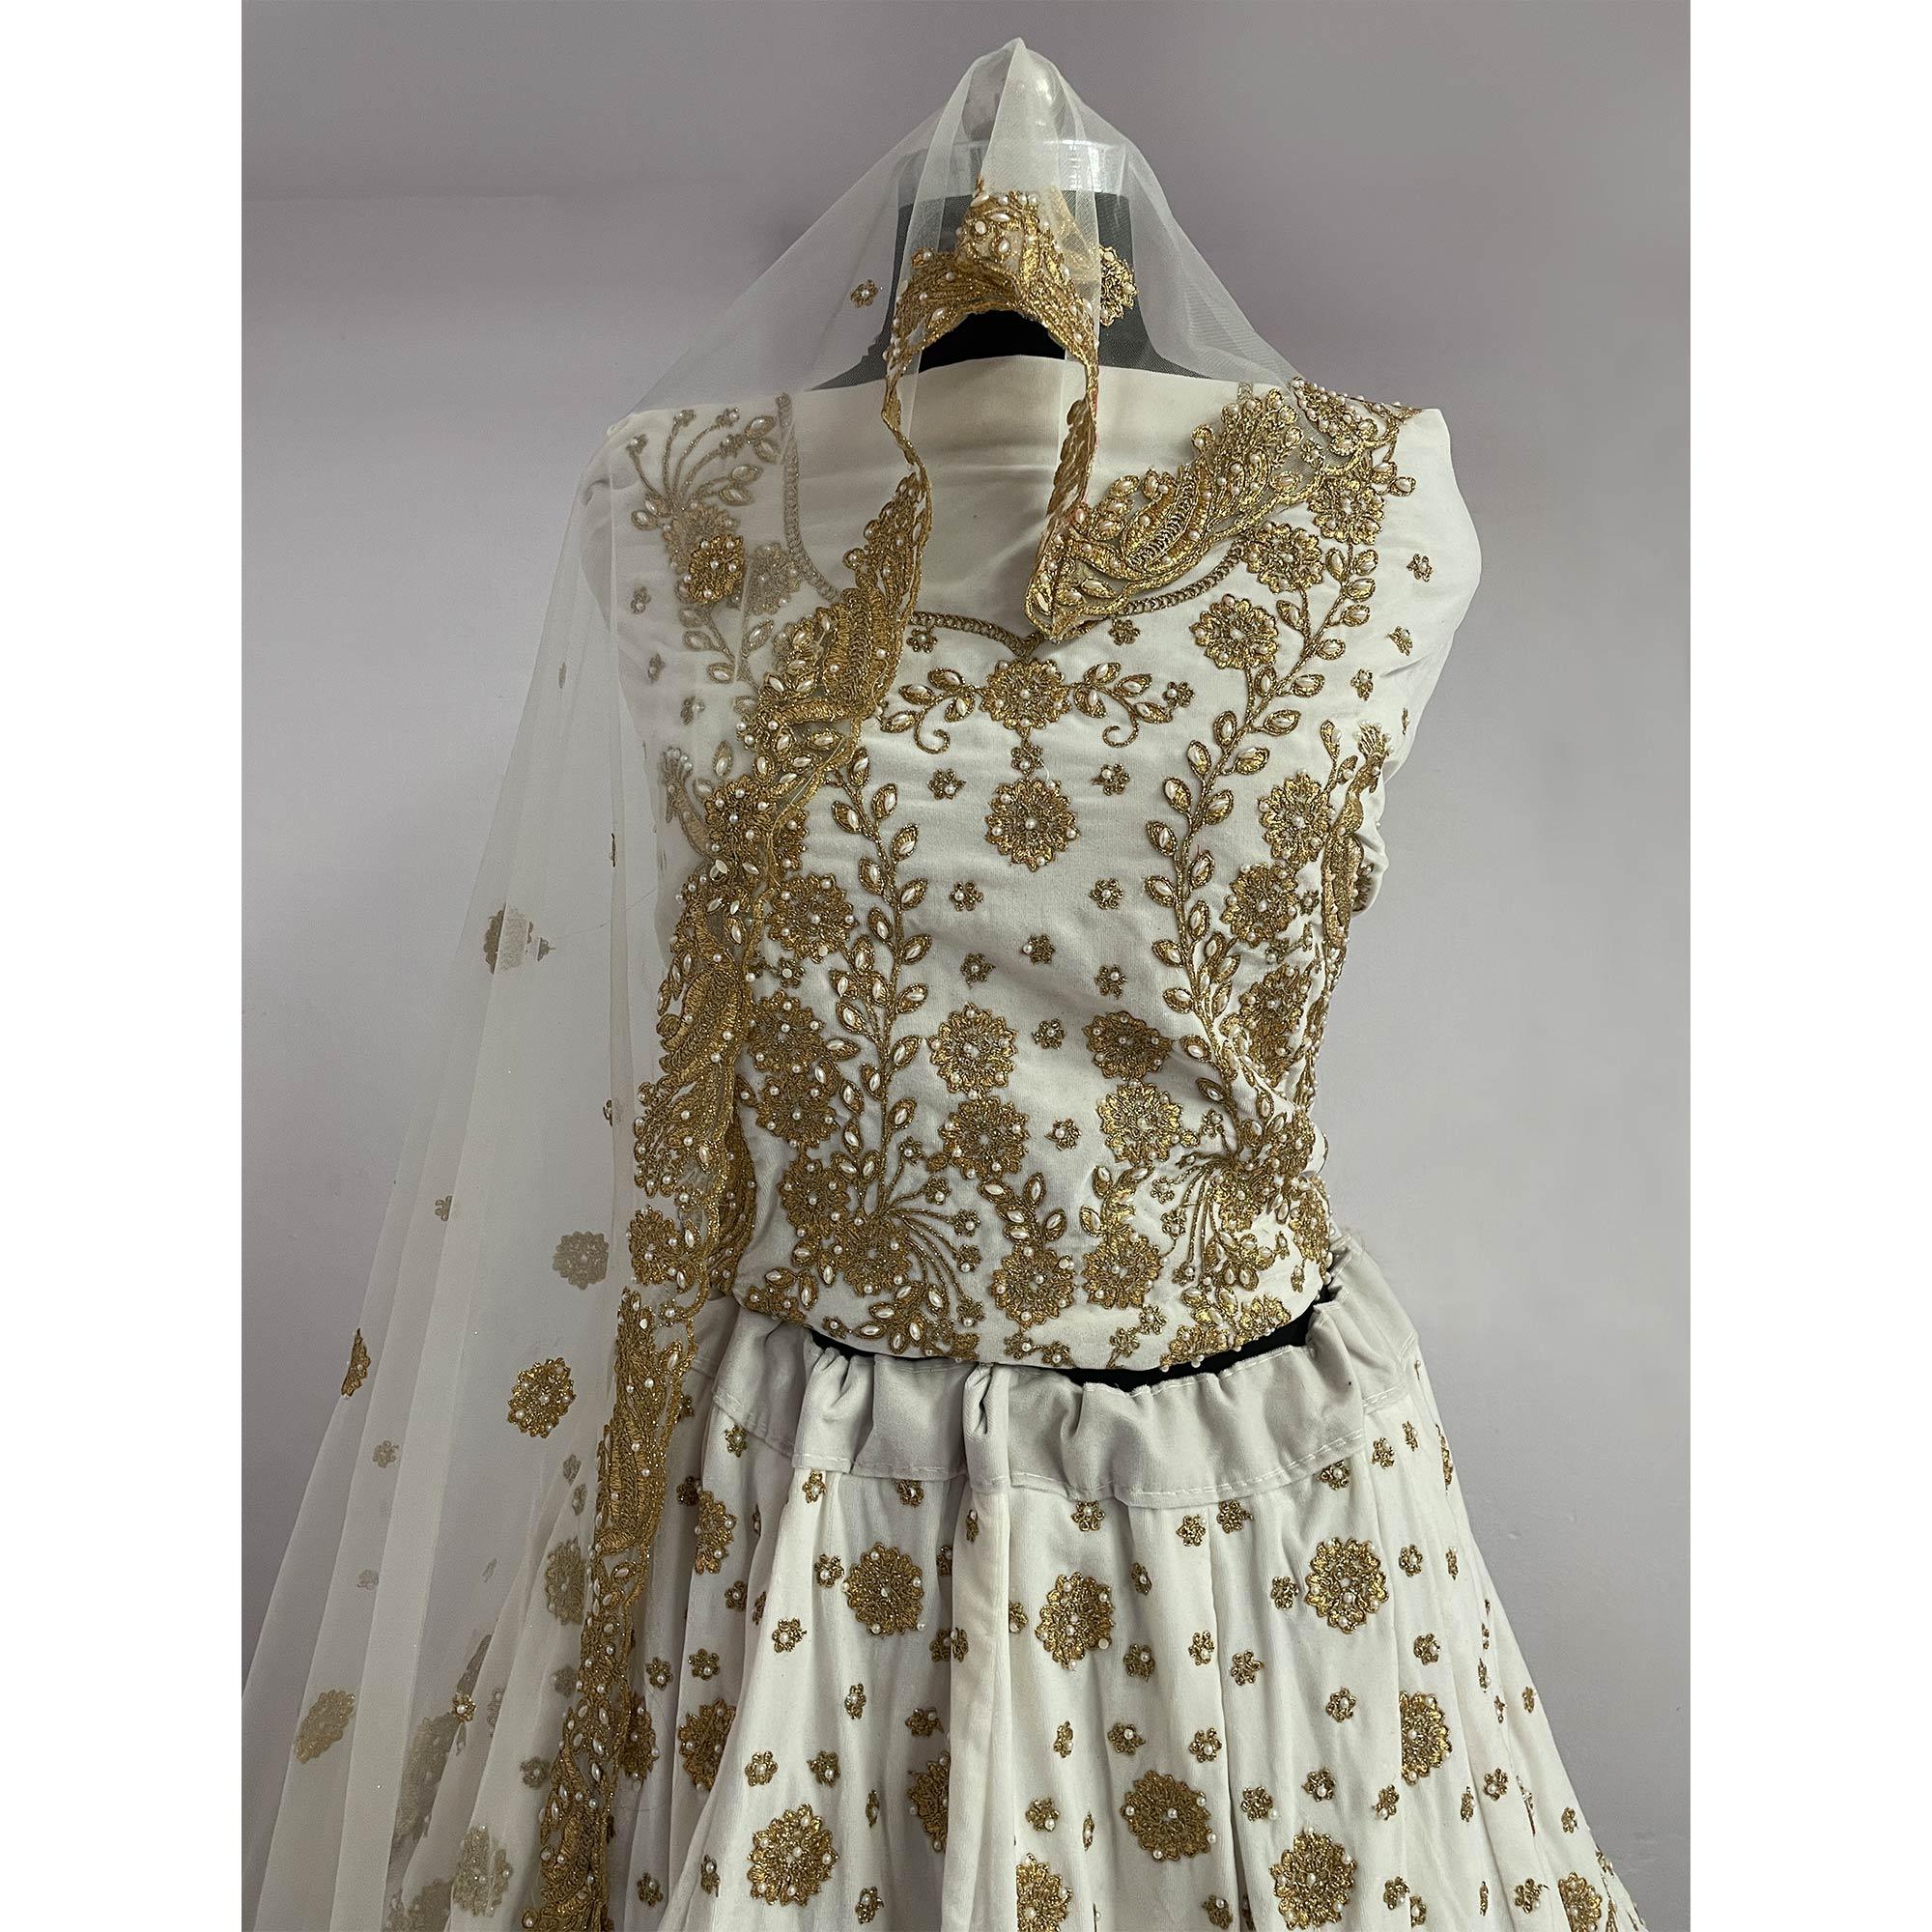 White Wedding Wear Floral Embroidery With Dori Work Velvet Lehenga Choli - Peachmode